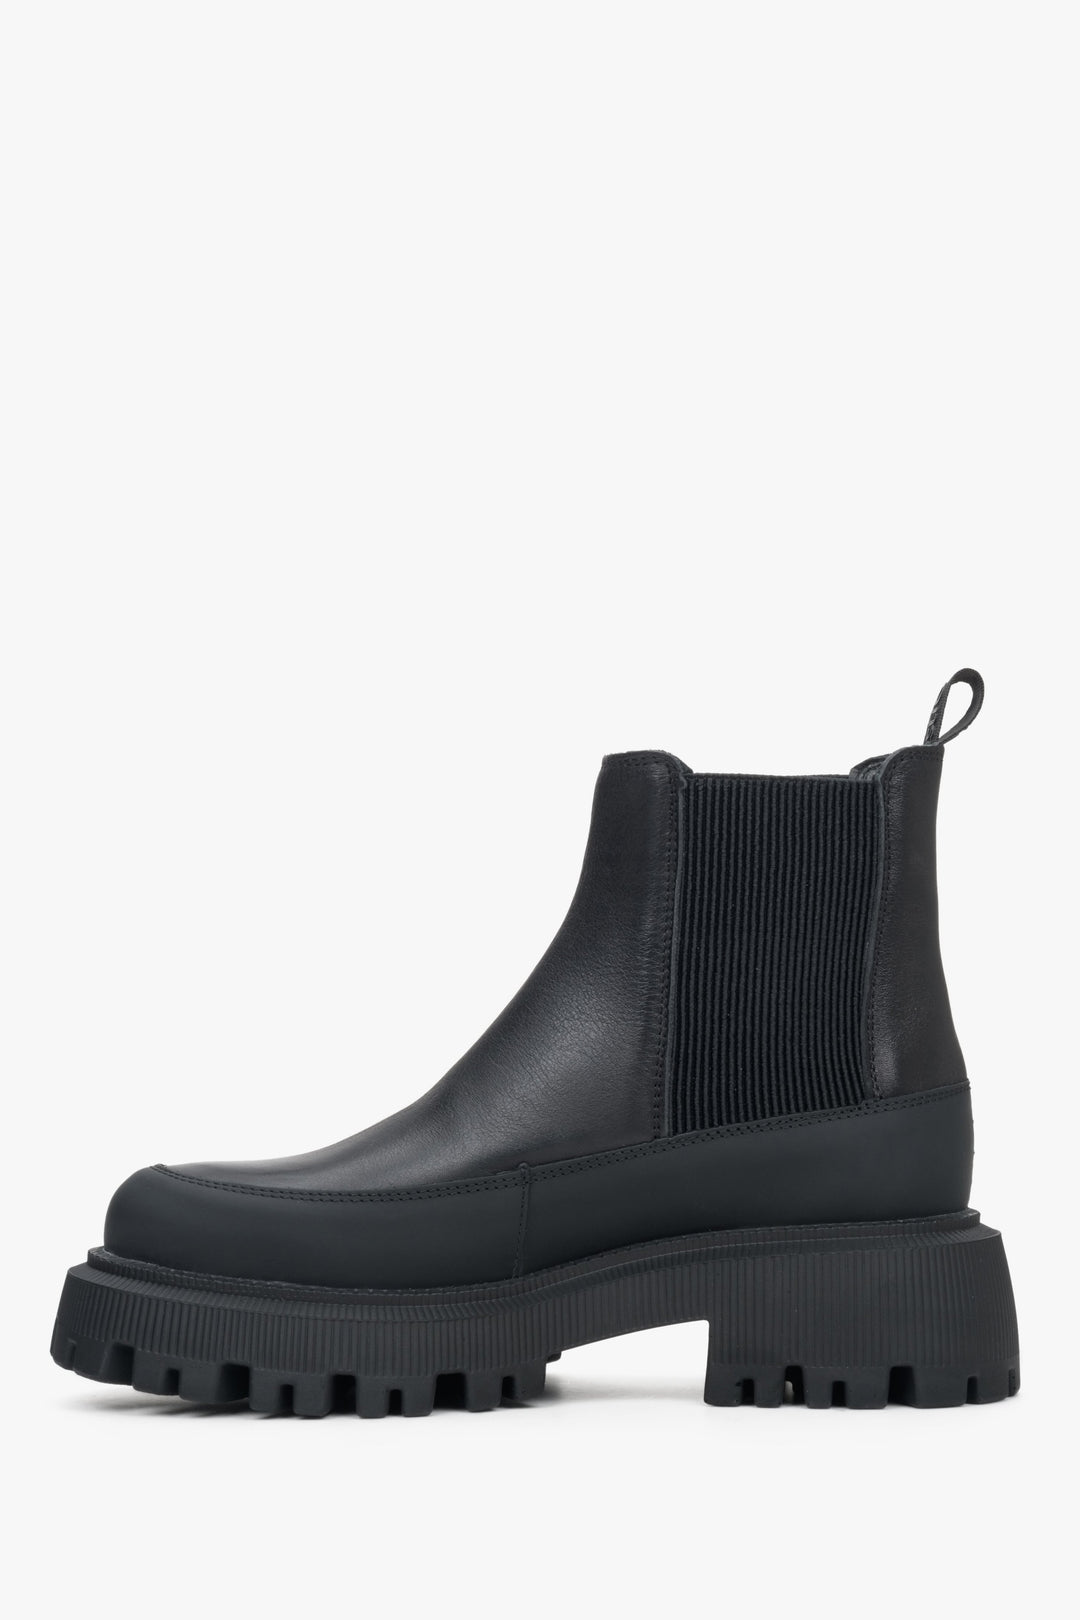 Niskie botki damskie na platformie w kolorze czarnym marki Estro - profil buta.